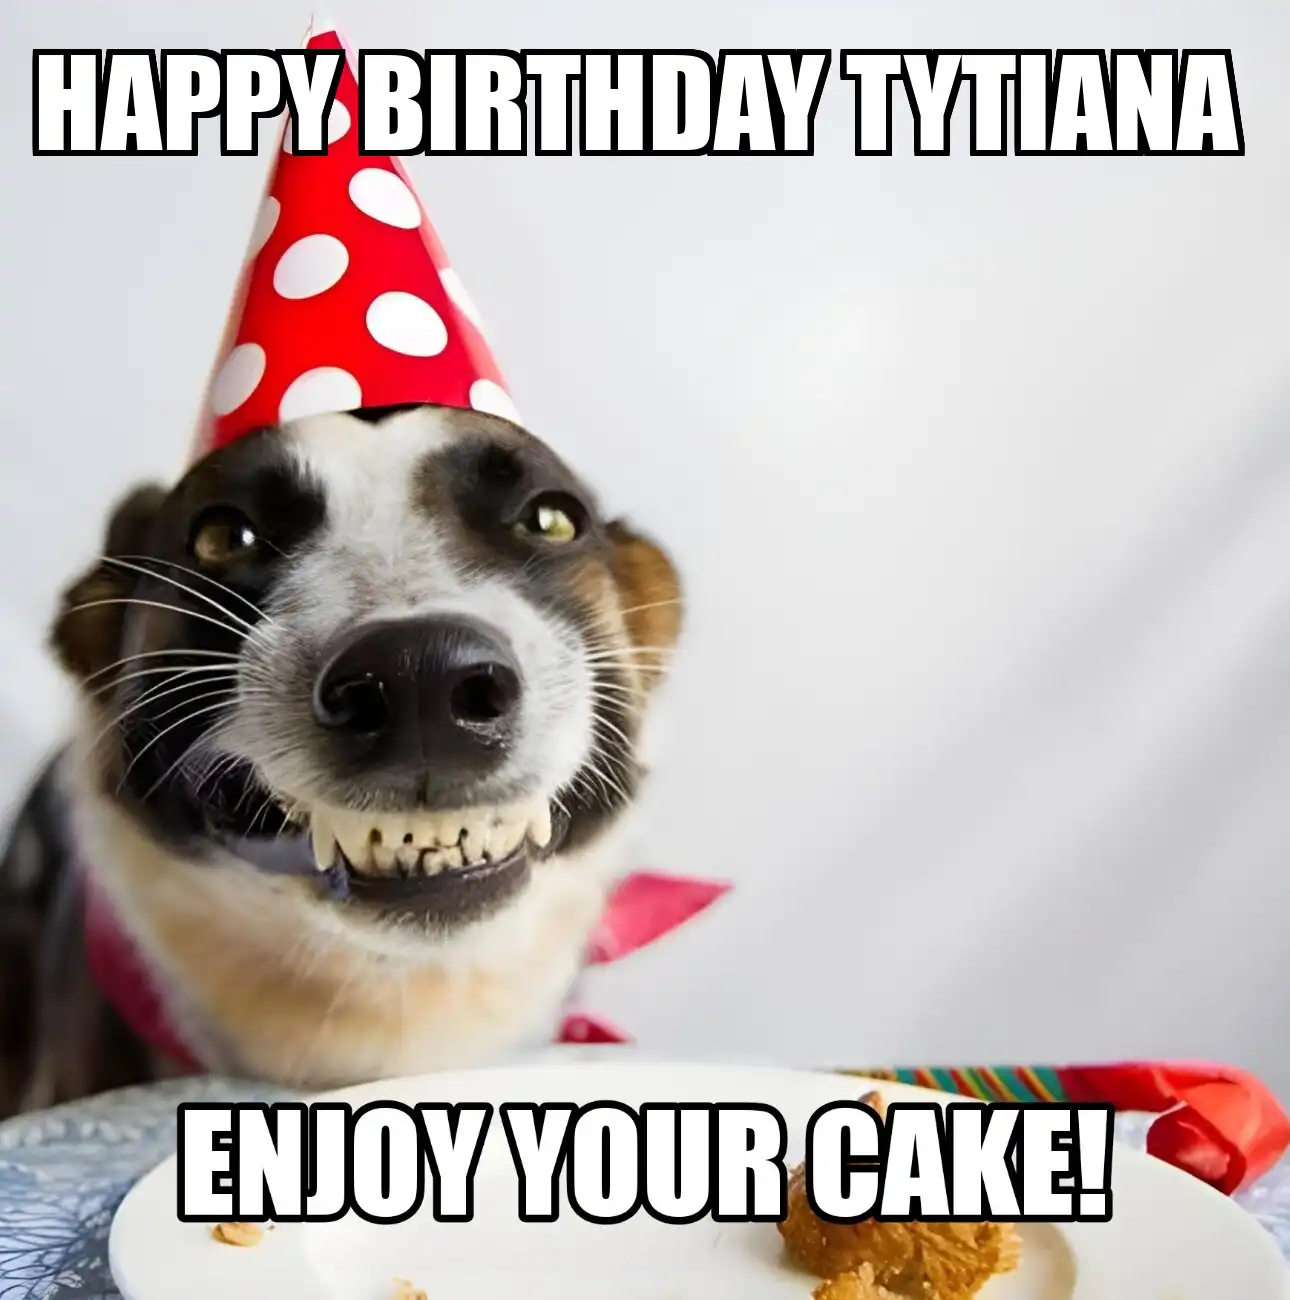 Happy Birthday Tytiana Enjoy Your Cake Dog Meme